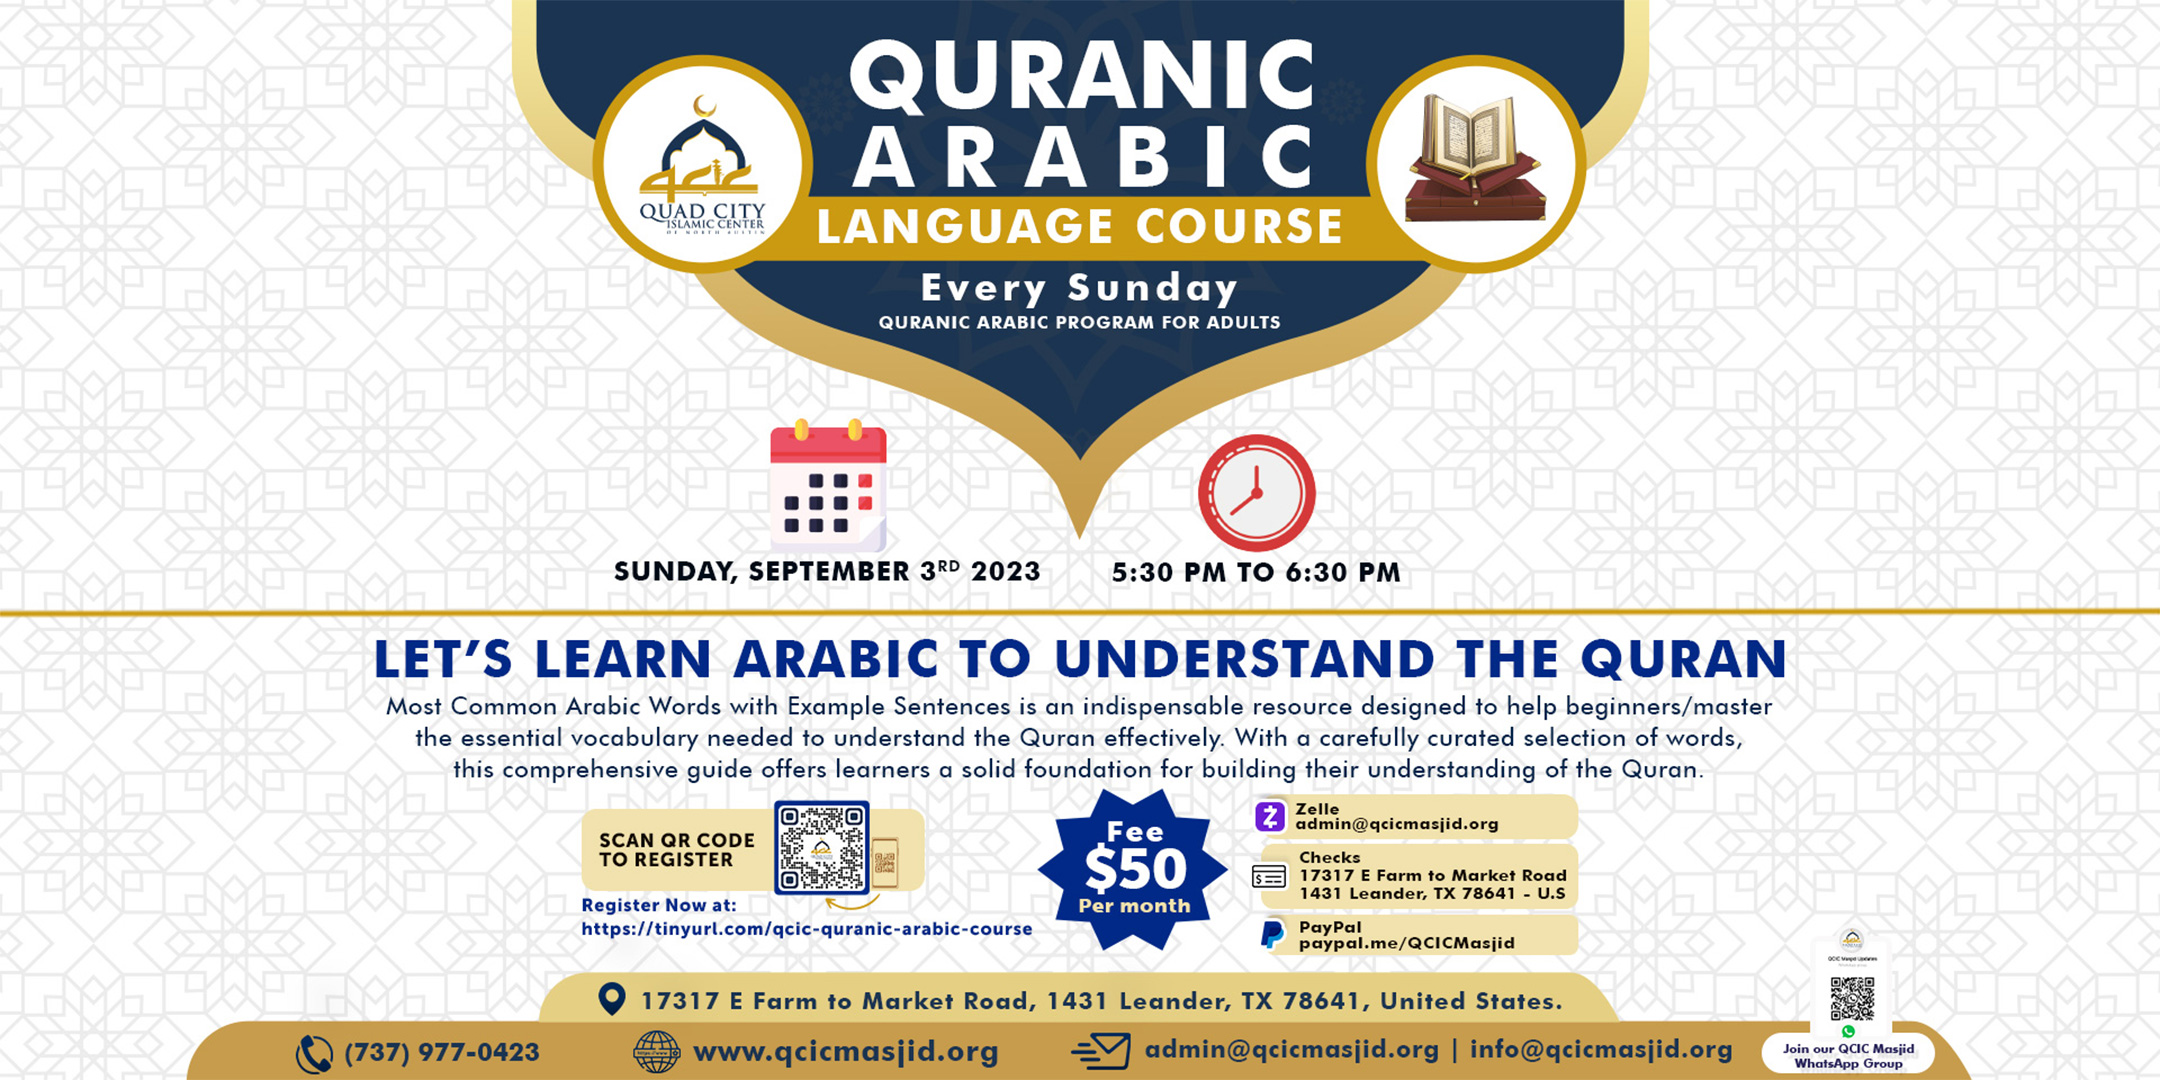 Quranic Arabic Language Course